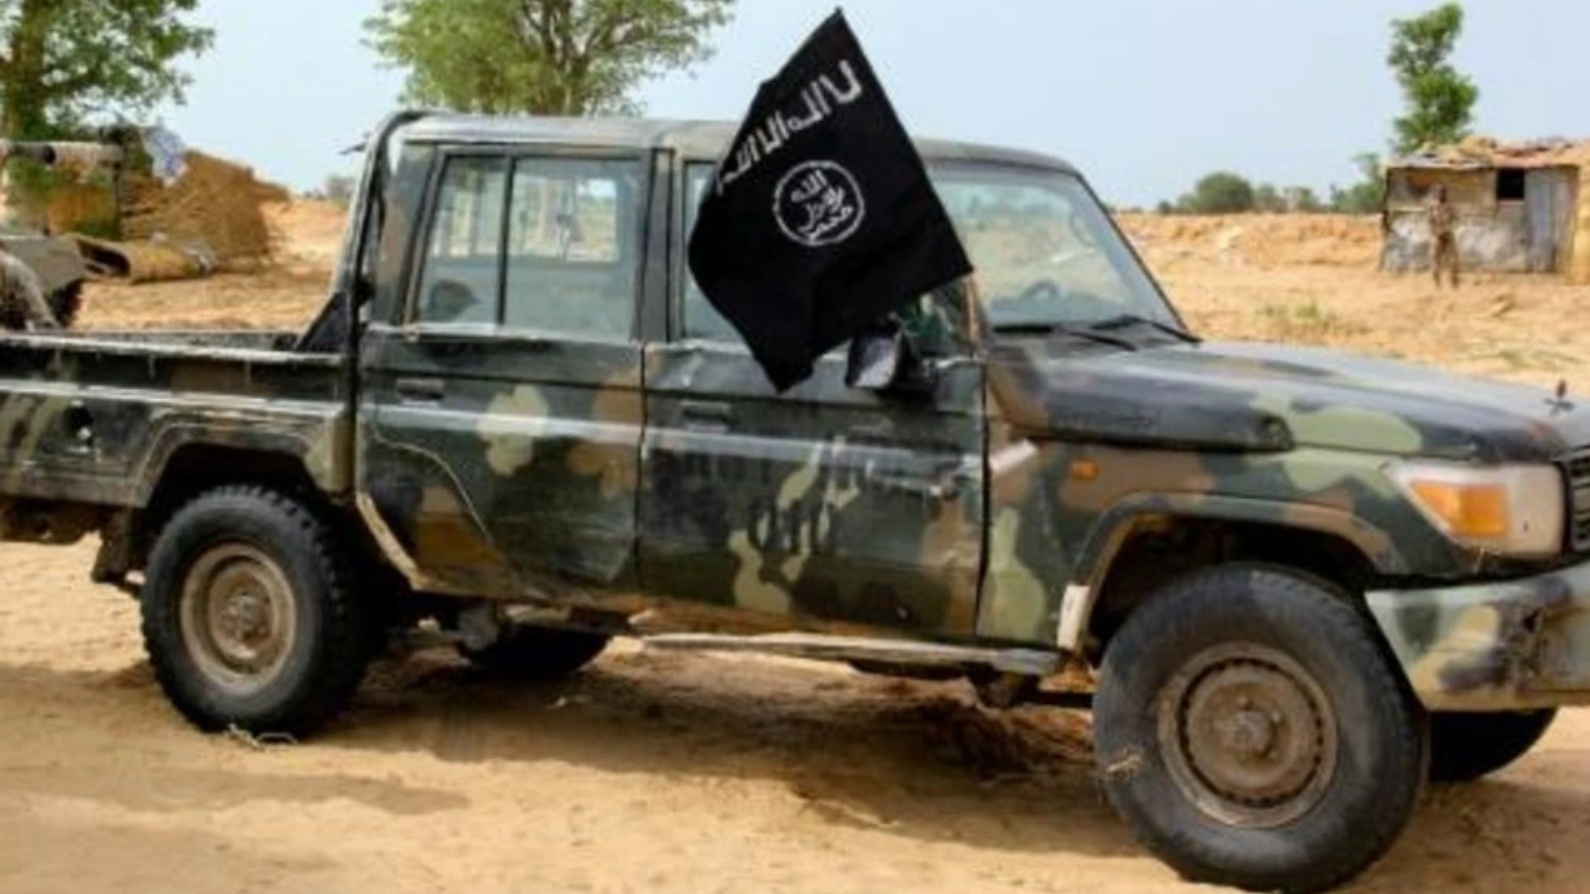 آلية لتنظيم الدولة الإسلامية في باغا بشمال شرق نيجيريا في 02 أغسطس 2019 